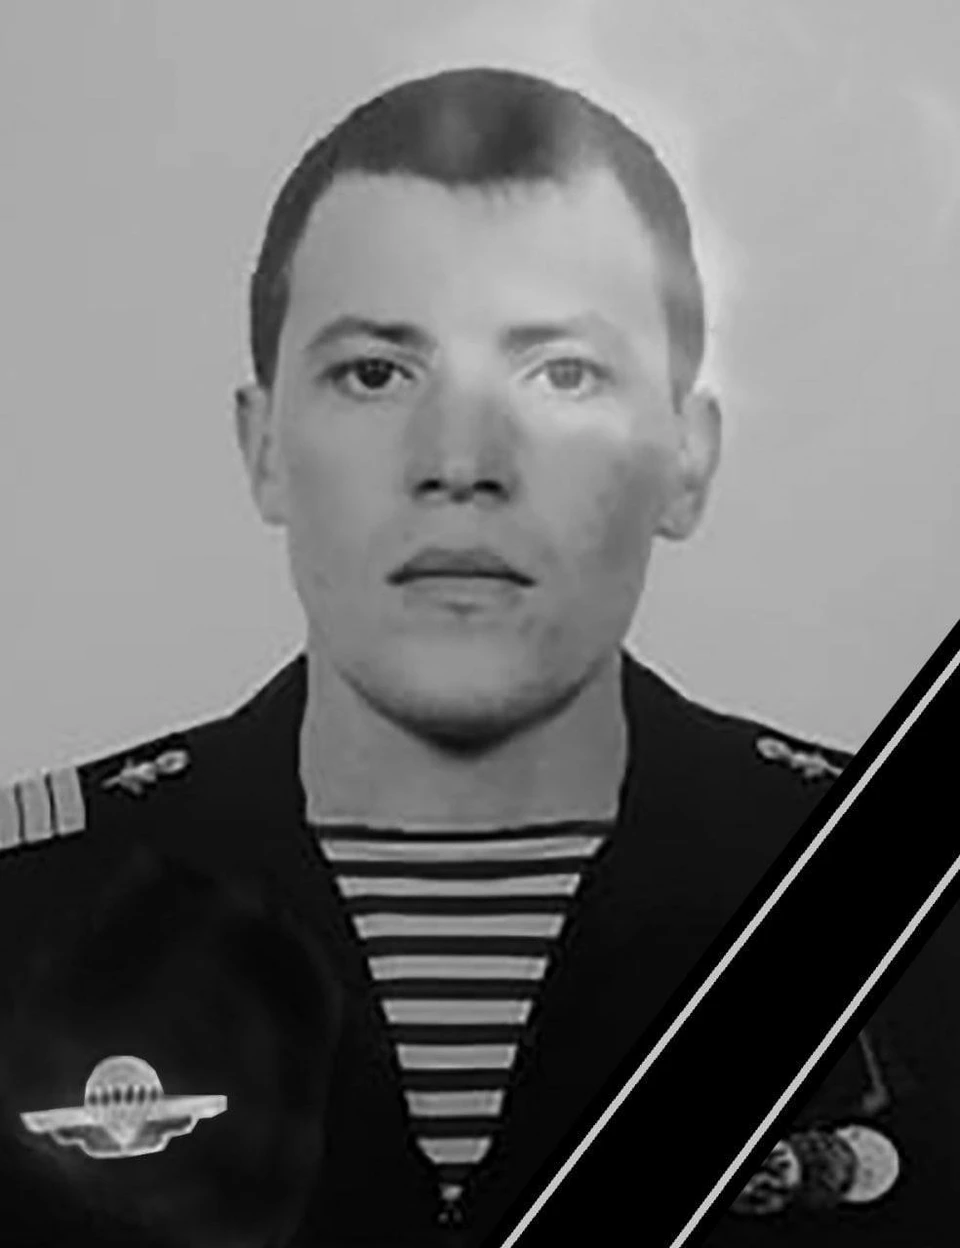 Гвардии сержант Кирилл Порошин